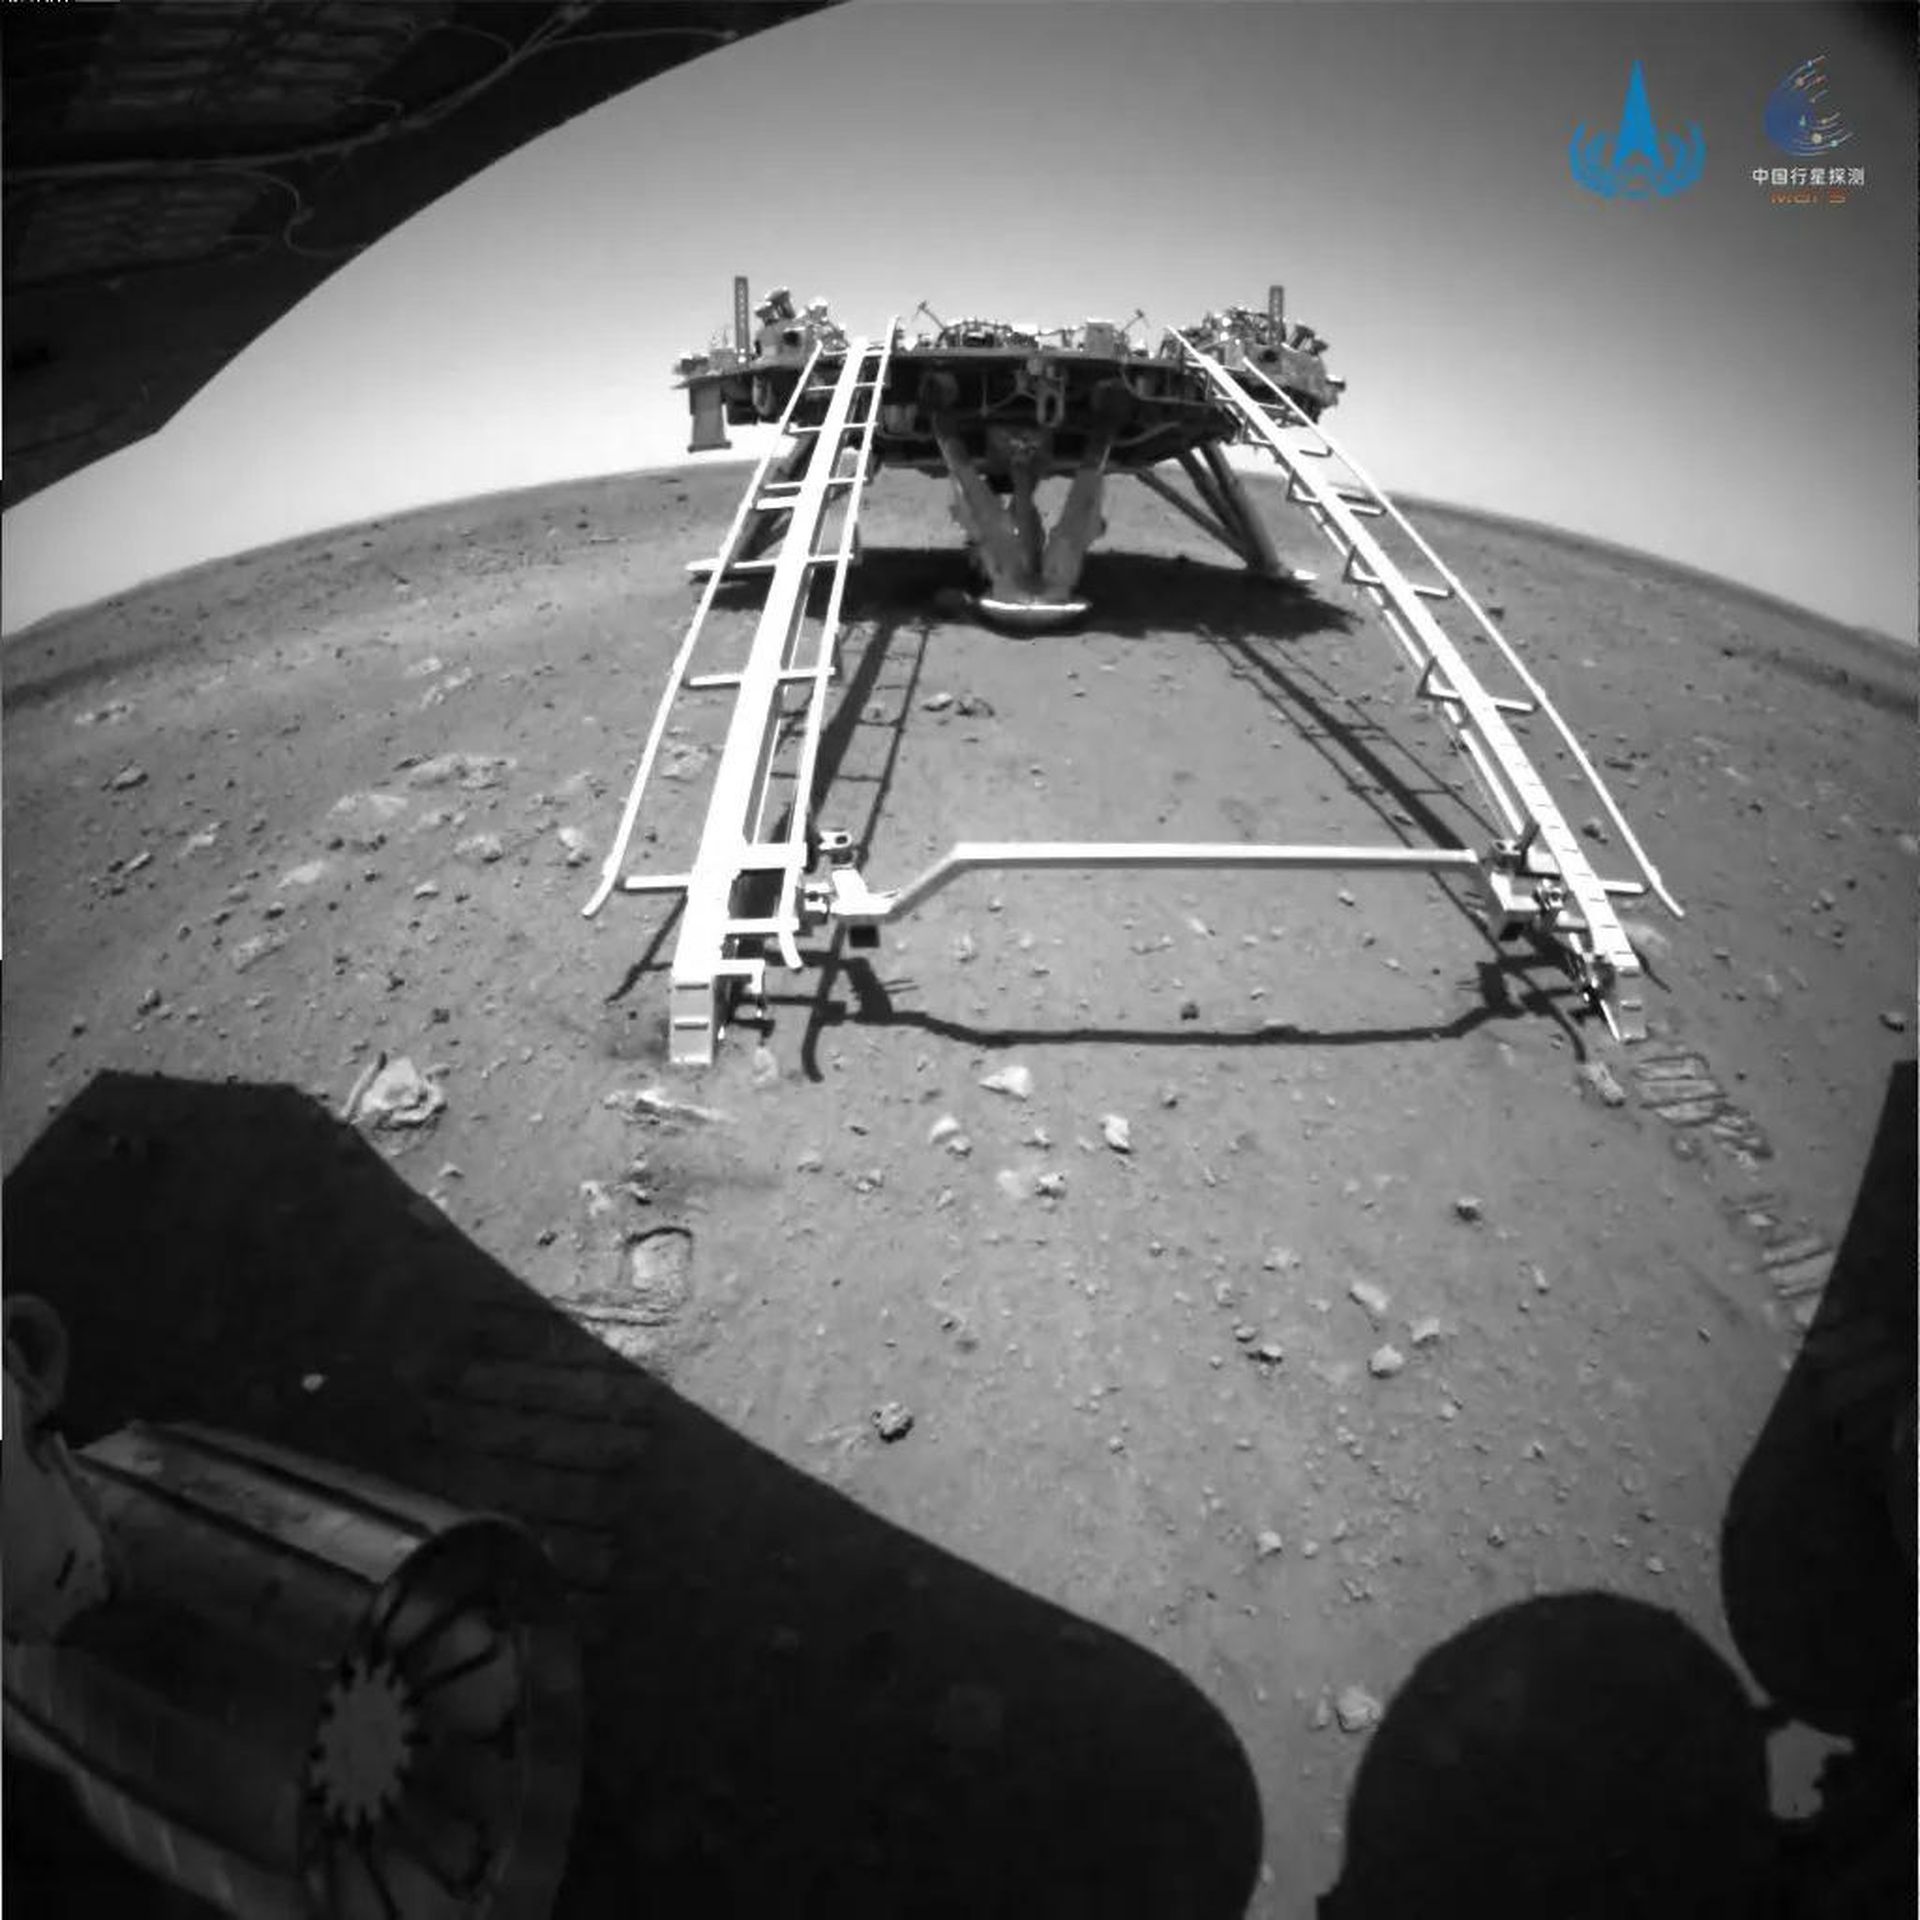 5月22日10时40分，祝融号火星车已安全驶离着陆平台，到达火星表面，开始巡视探测。这是由后避障相机拍摄的图片。（中国国家航天局）